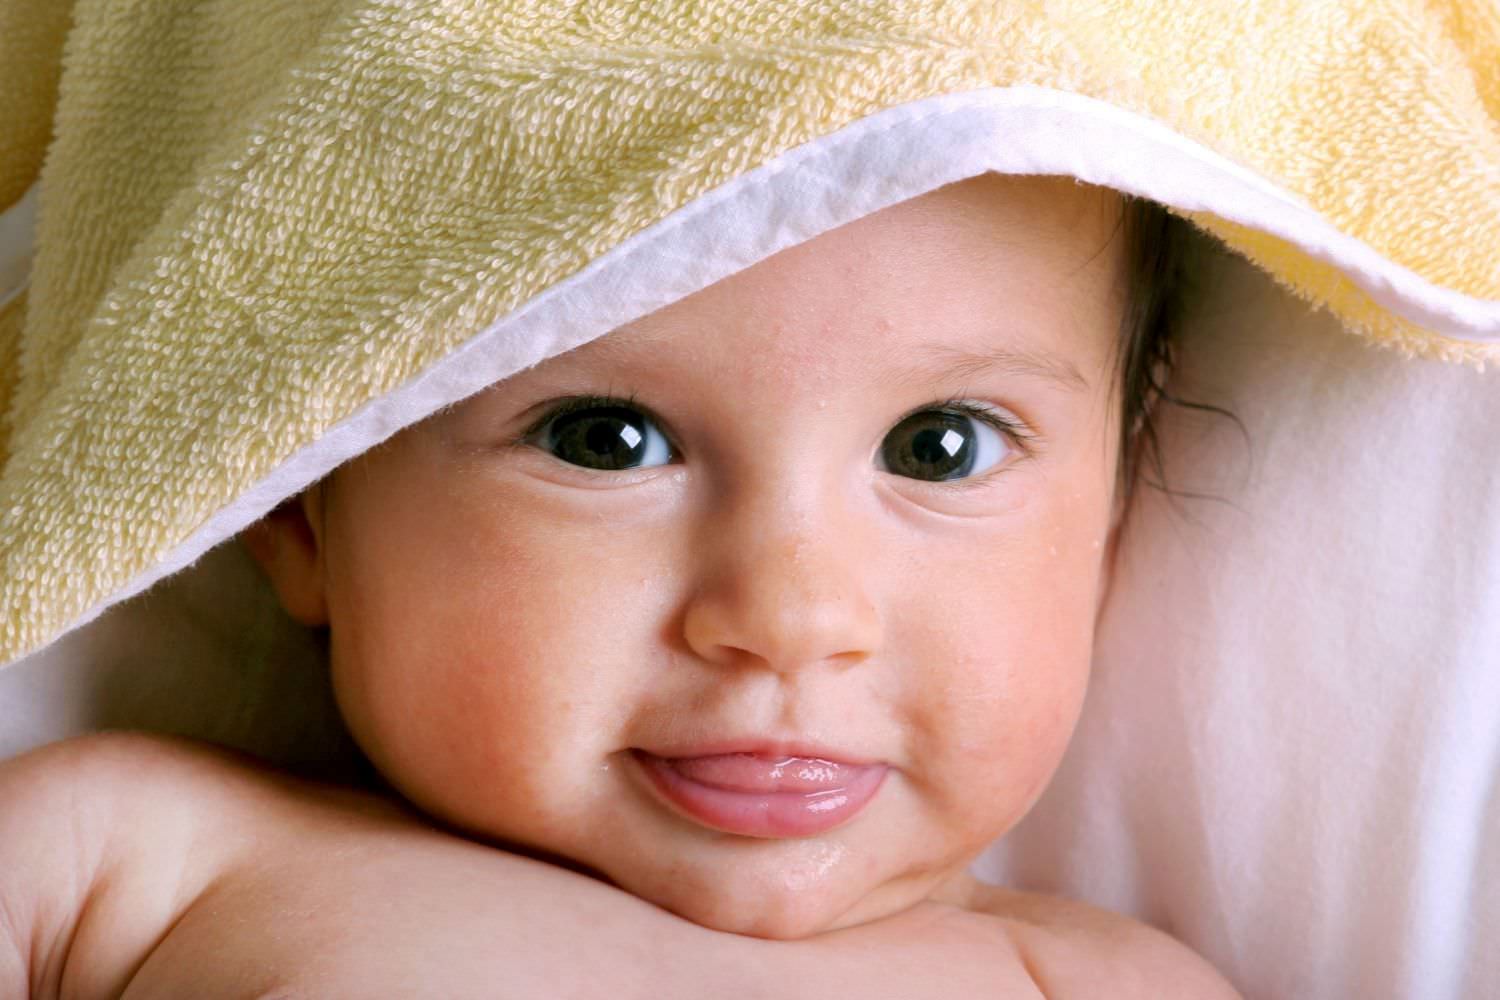 Bild zeigt: Säugling mit offenen Augen und Zunge im leicht geöffneten Mund